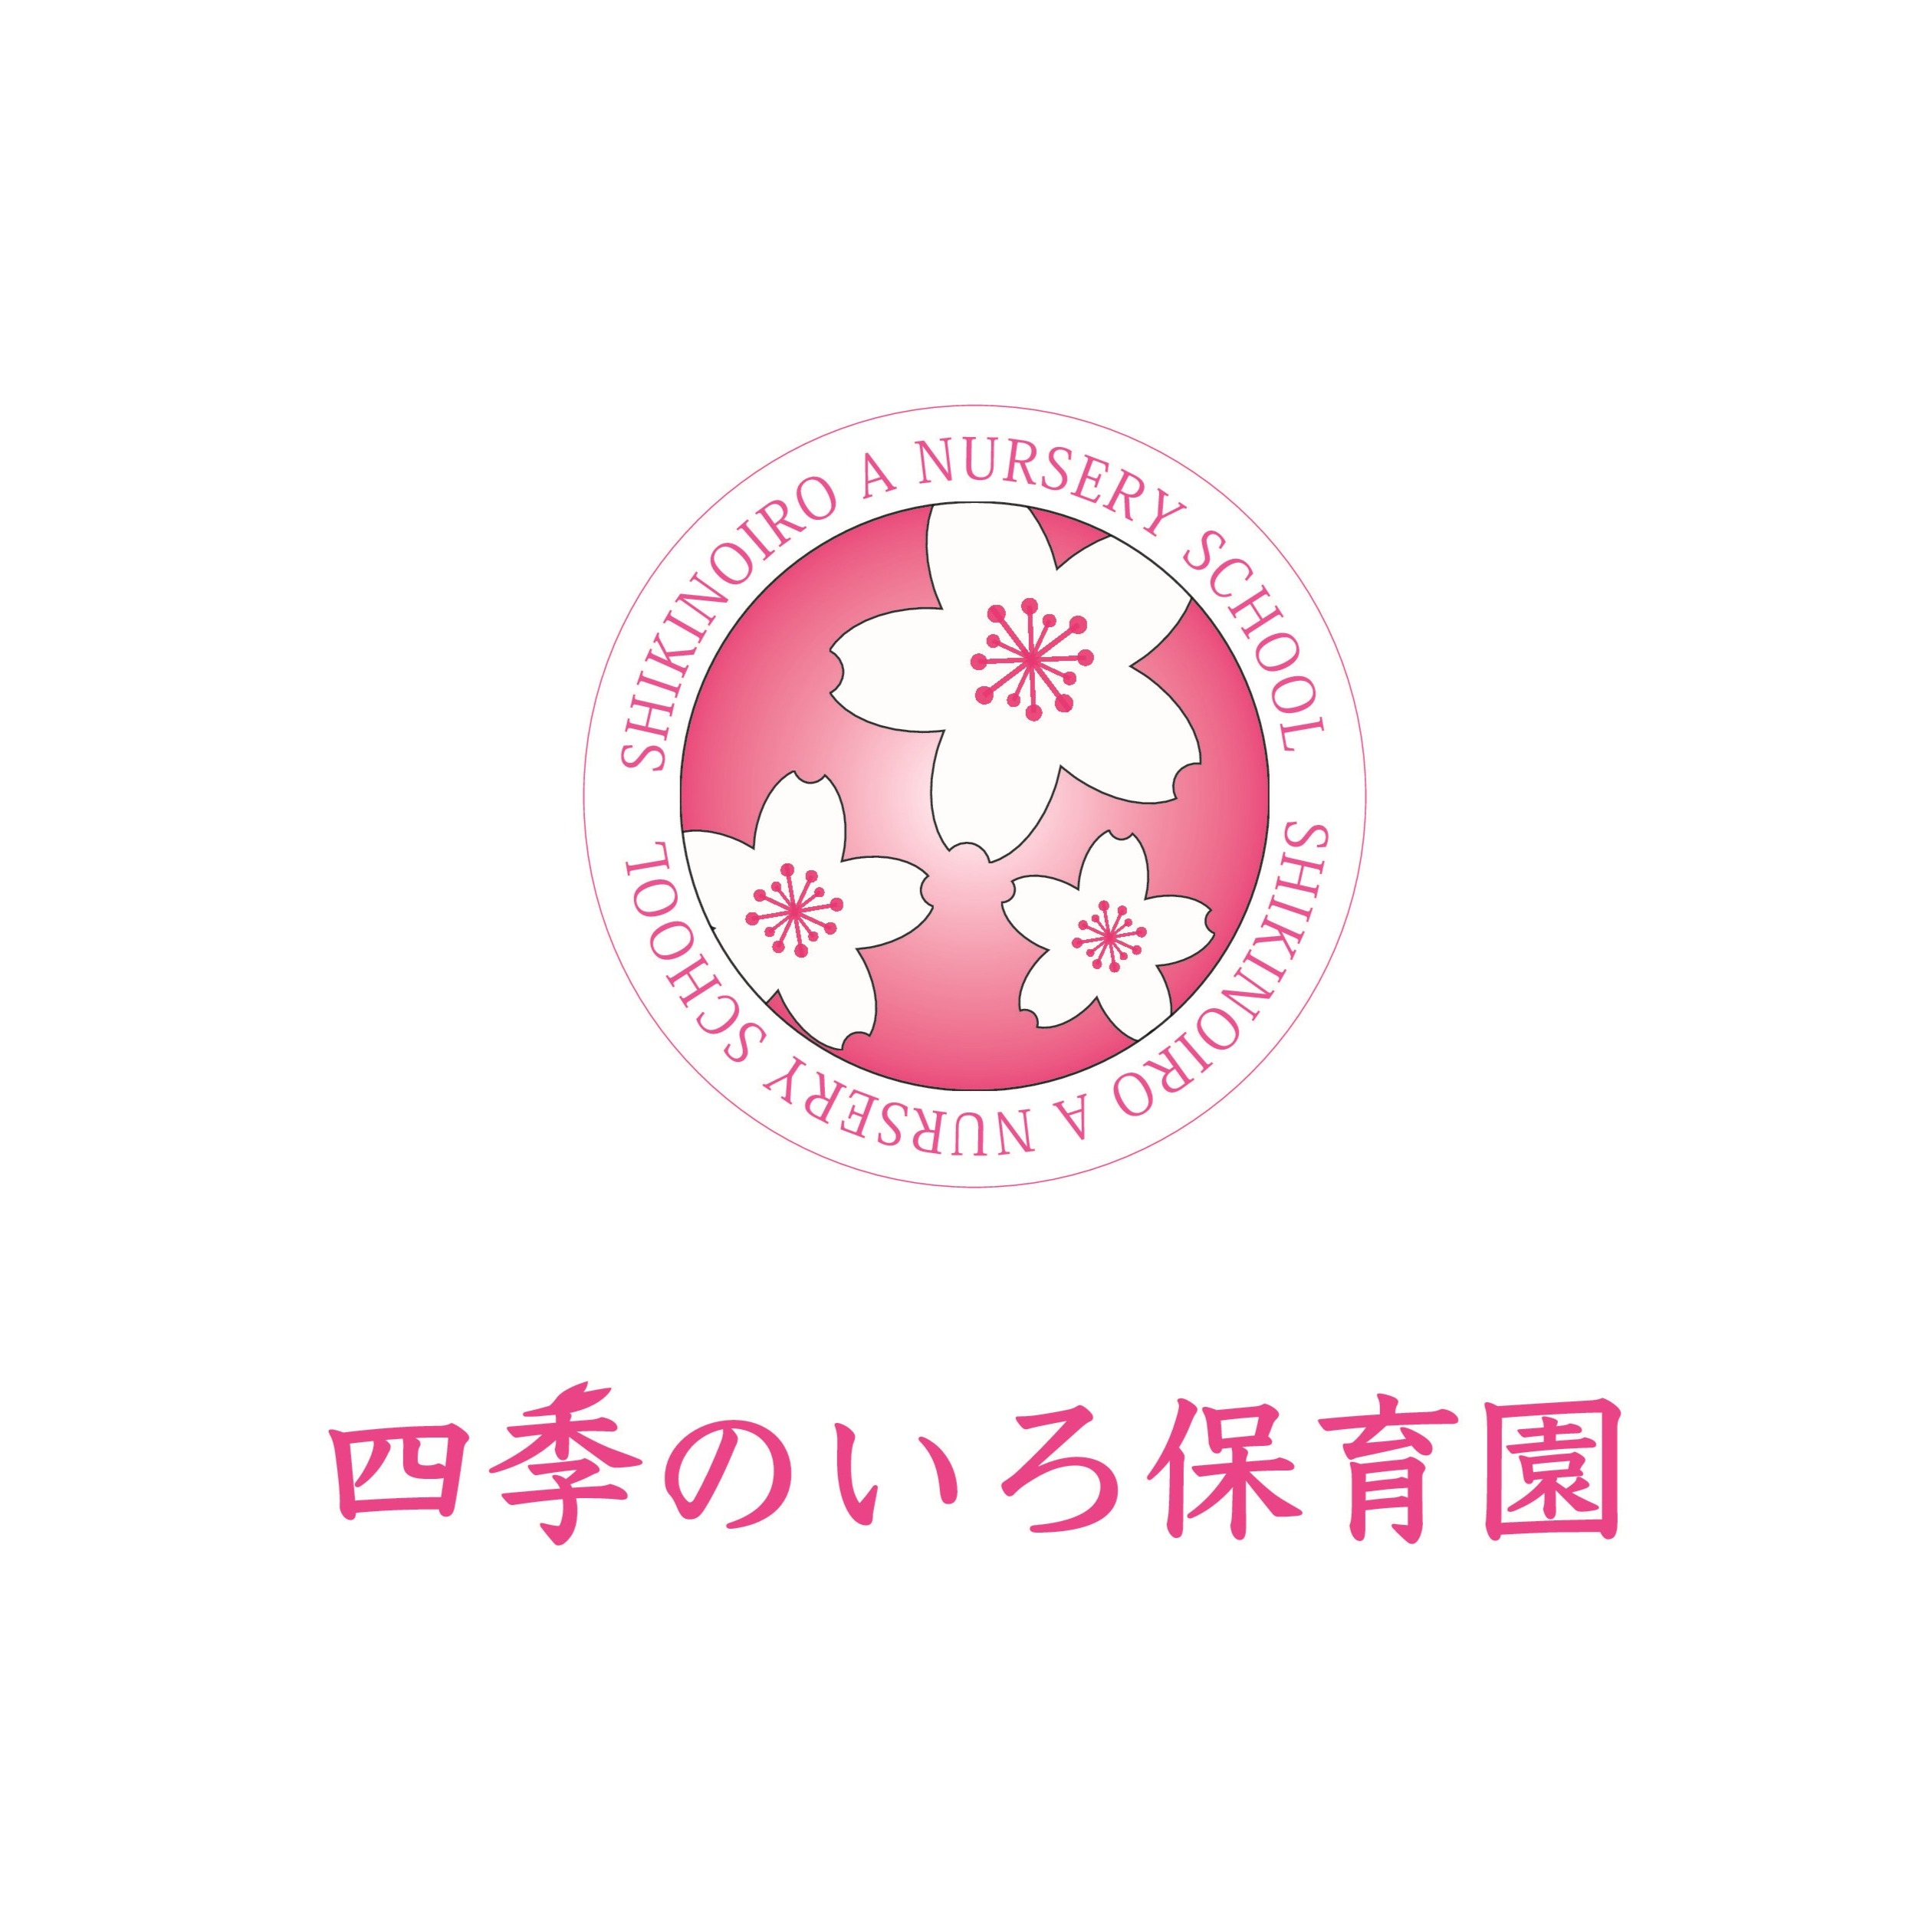 四季のいろ保育園 吉塚園 Logo